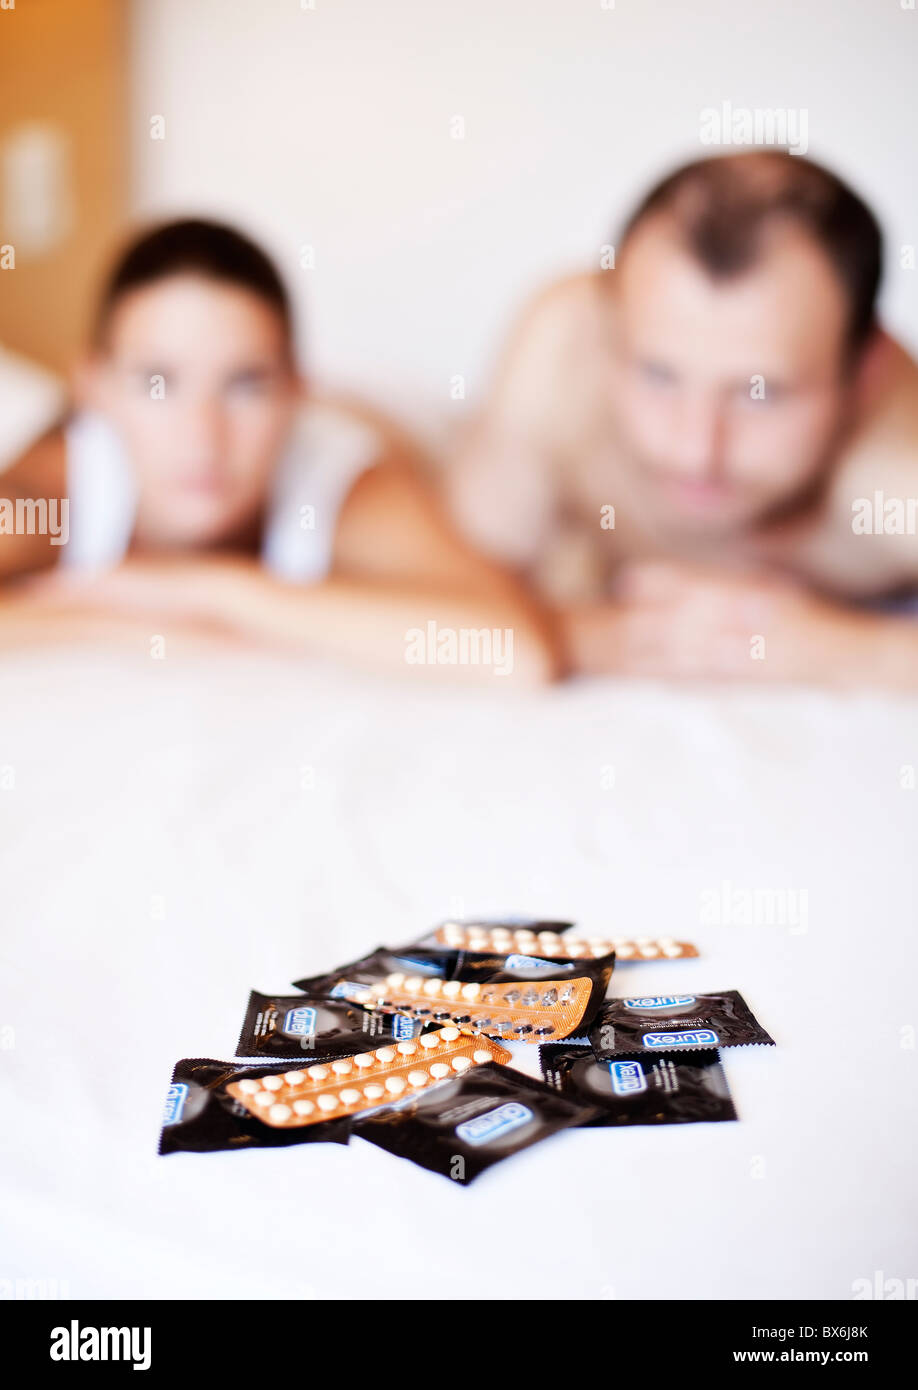 La pilule, pilule anticonceptionnelle, condom Banque D'Images